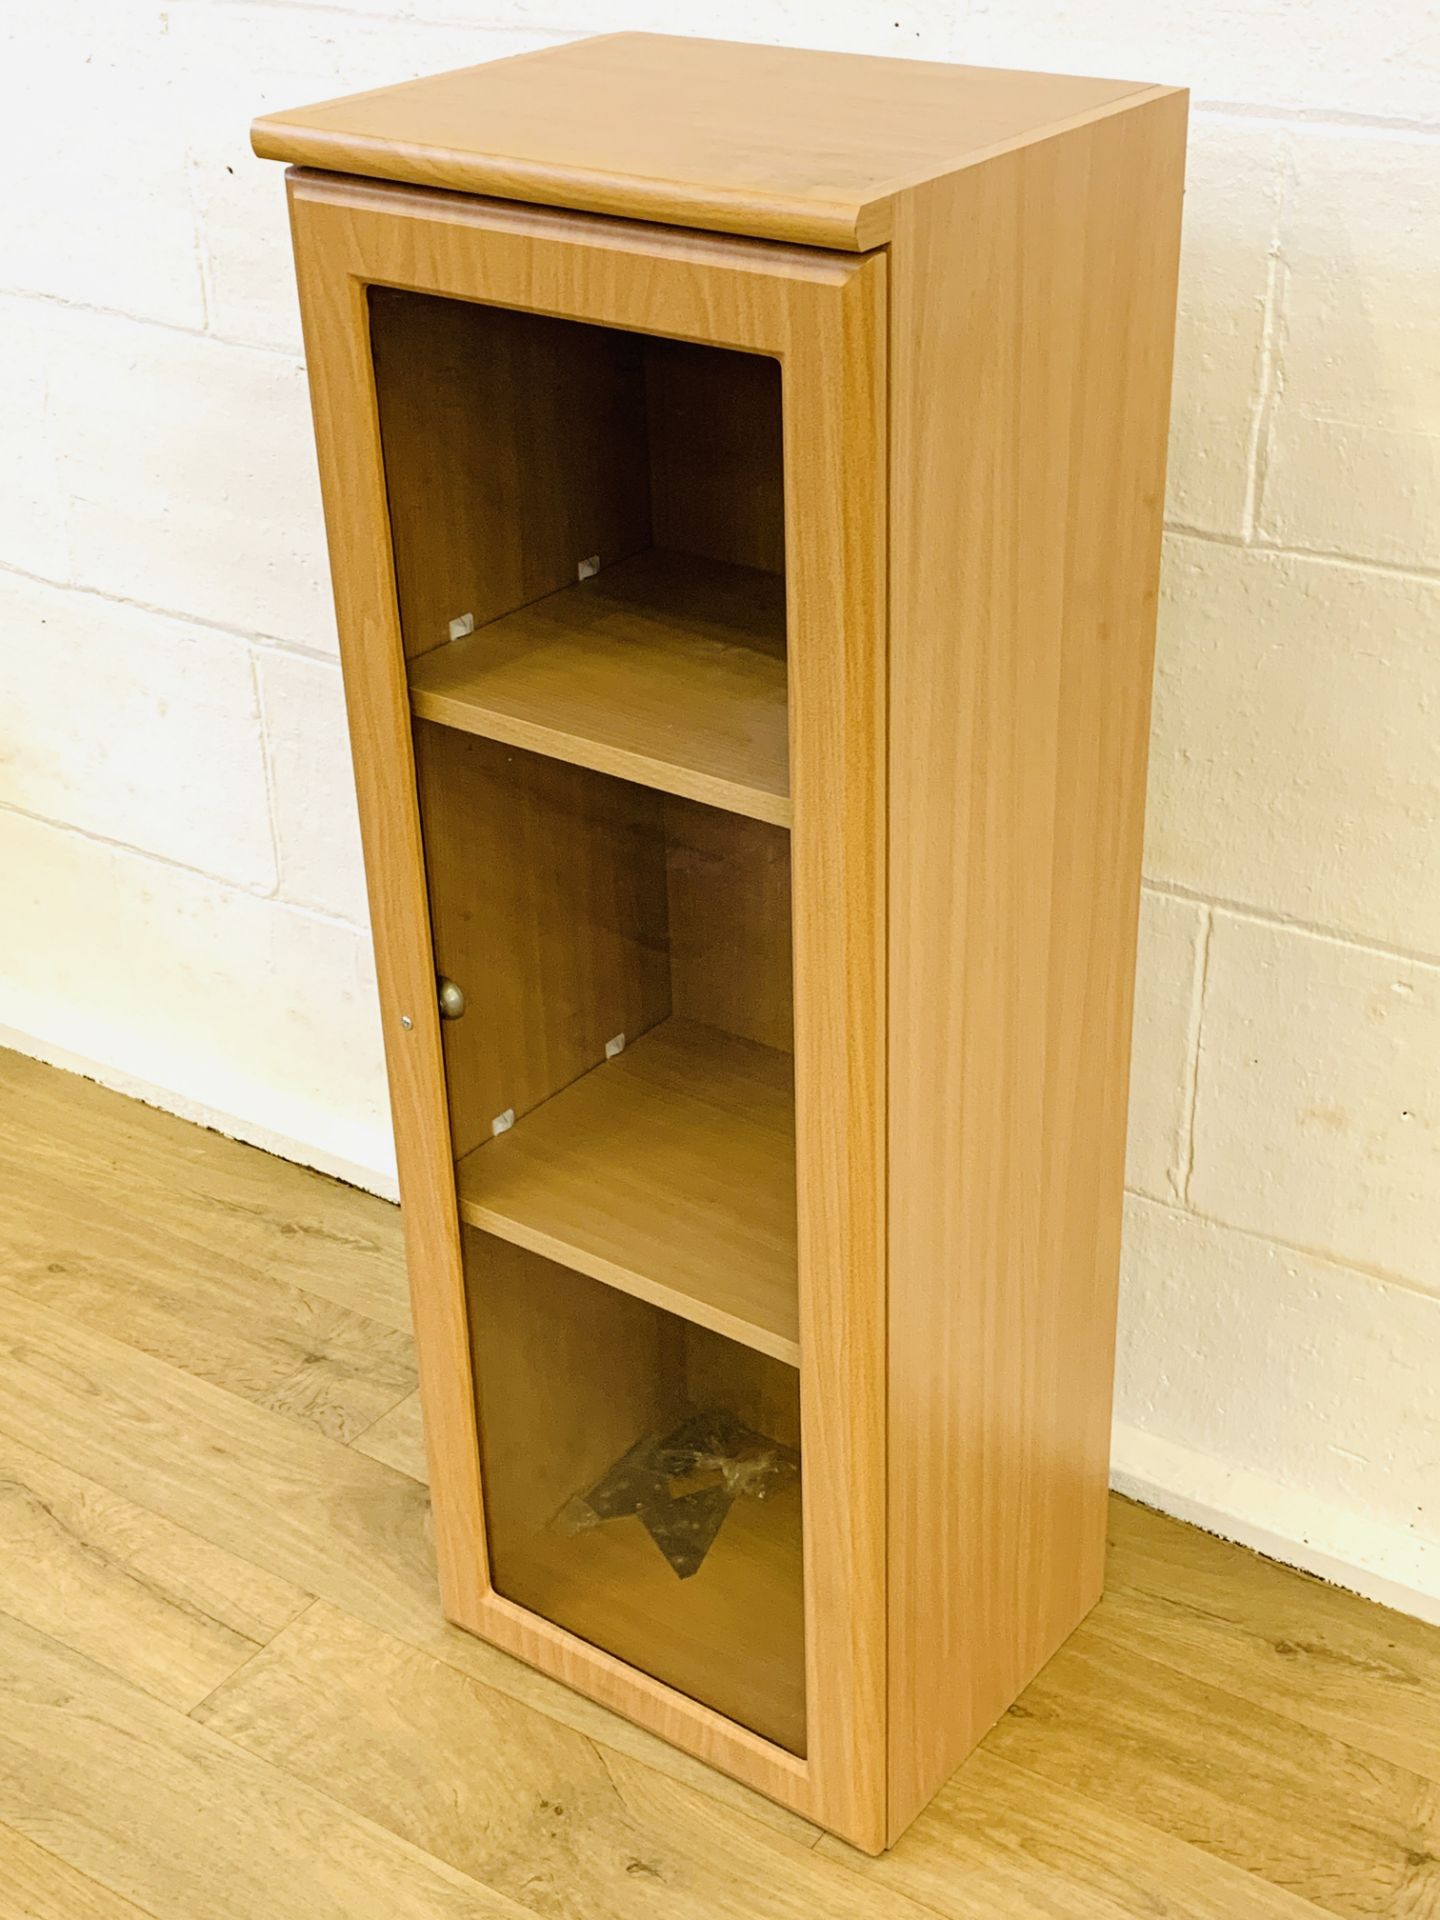 Wood veneer media cabinet - Image 2 of 3